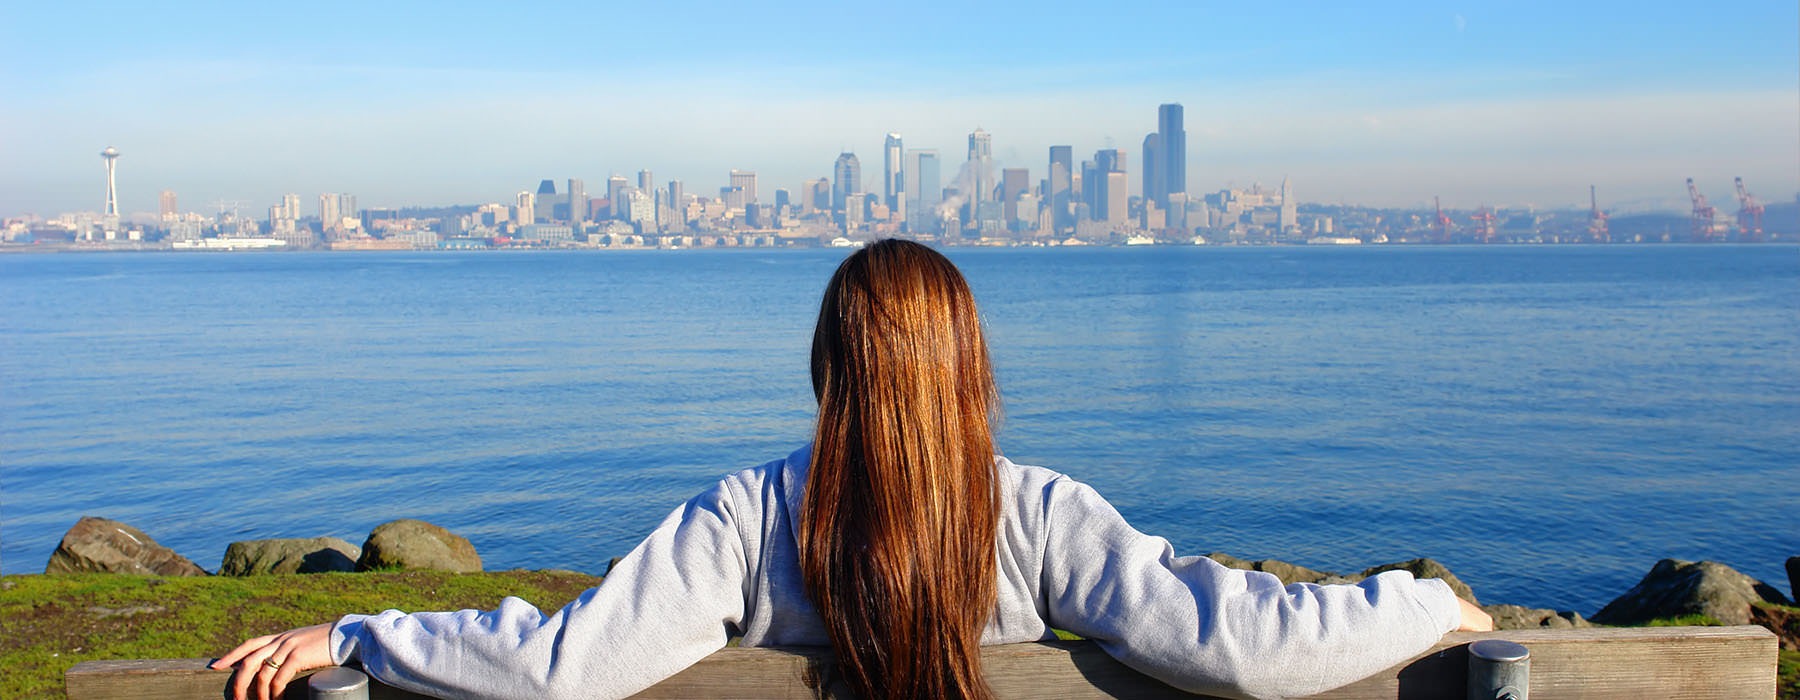 Woman overlooking the Seattle skyline